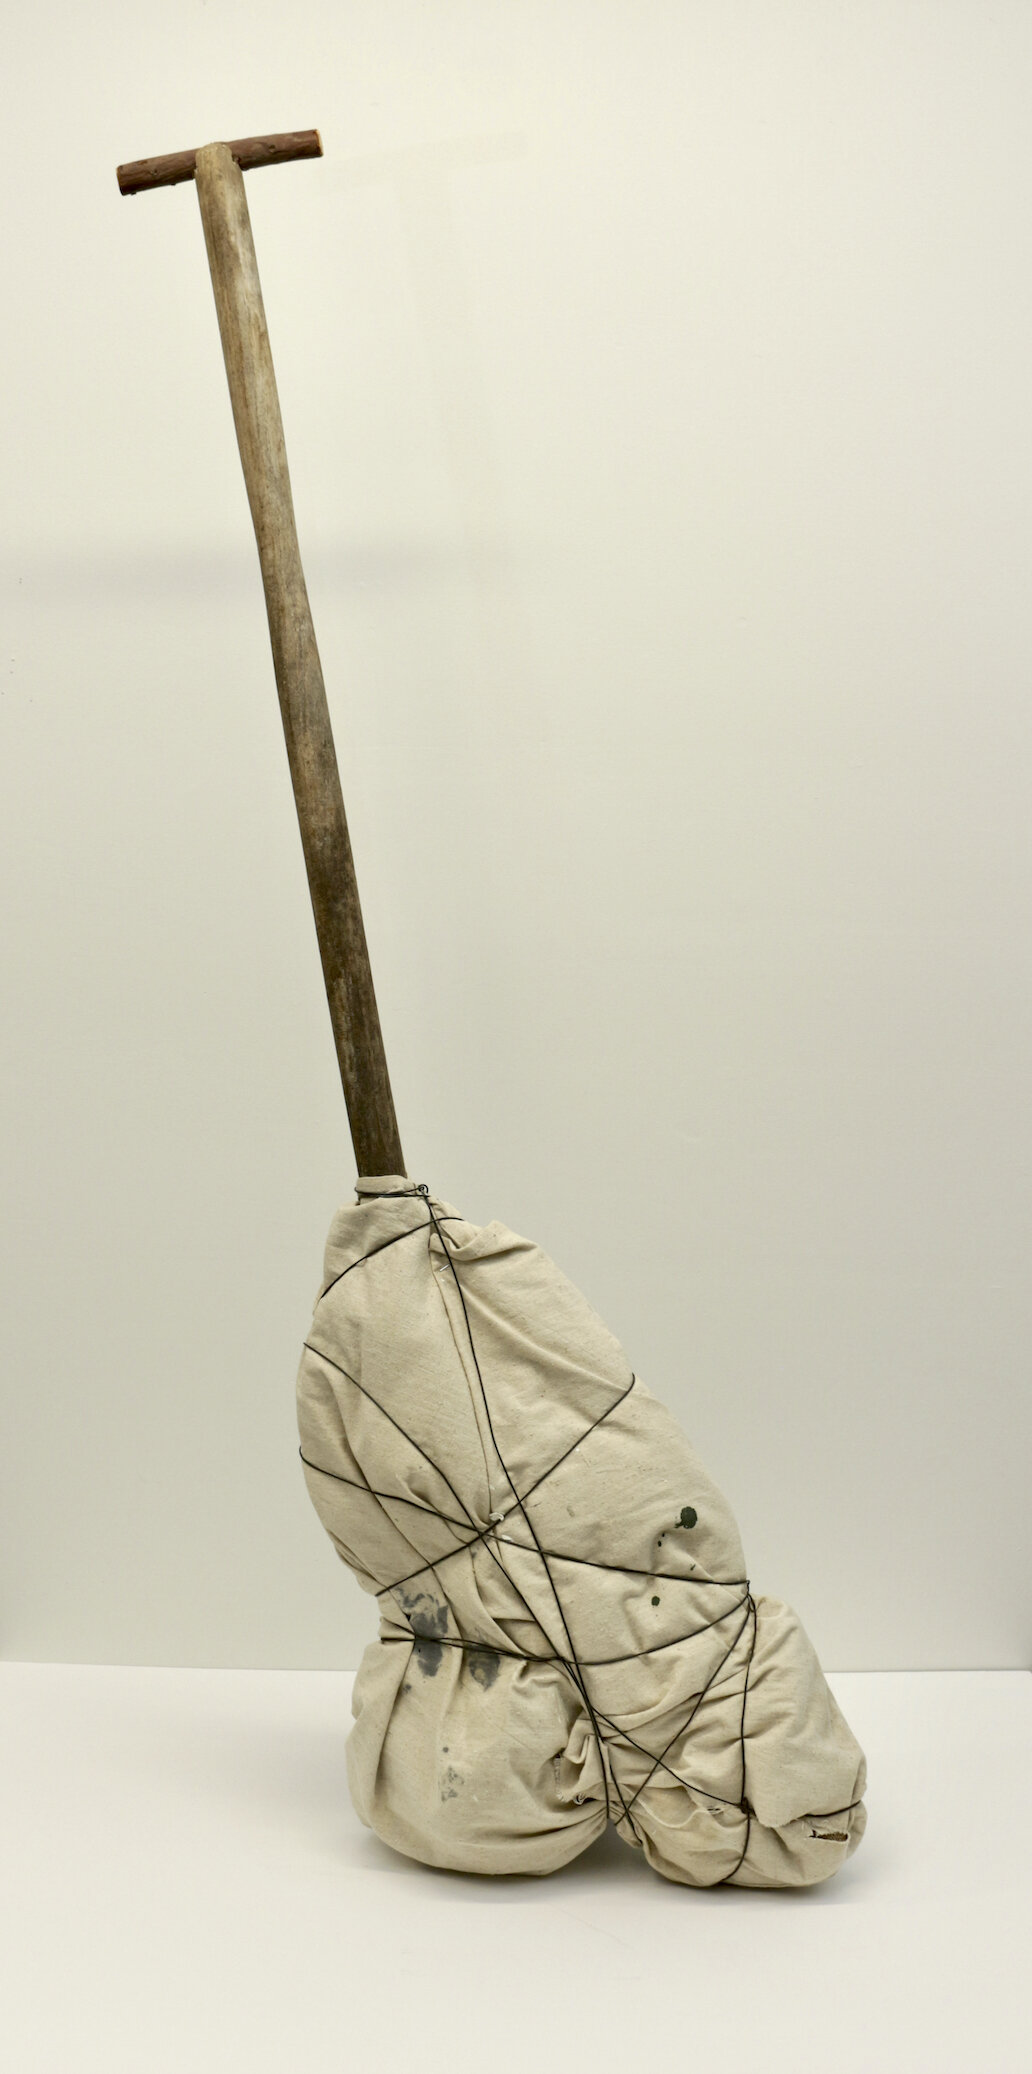 Steve Briscoe, Bindle Oar, 2020, Fabric, wire, wooden handle, 55 x 15 x 7"